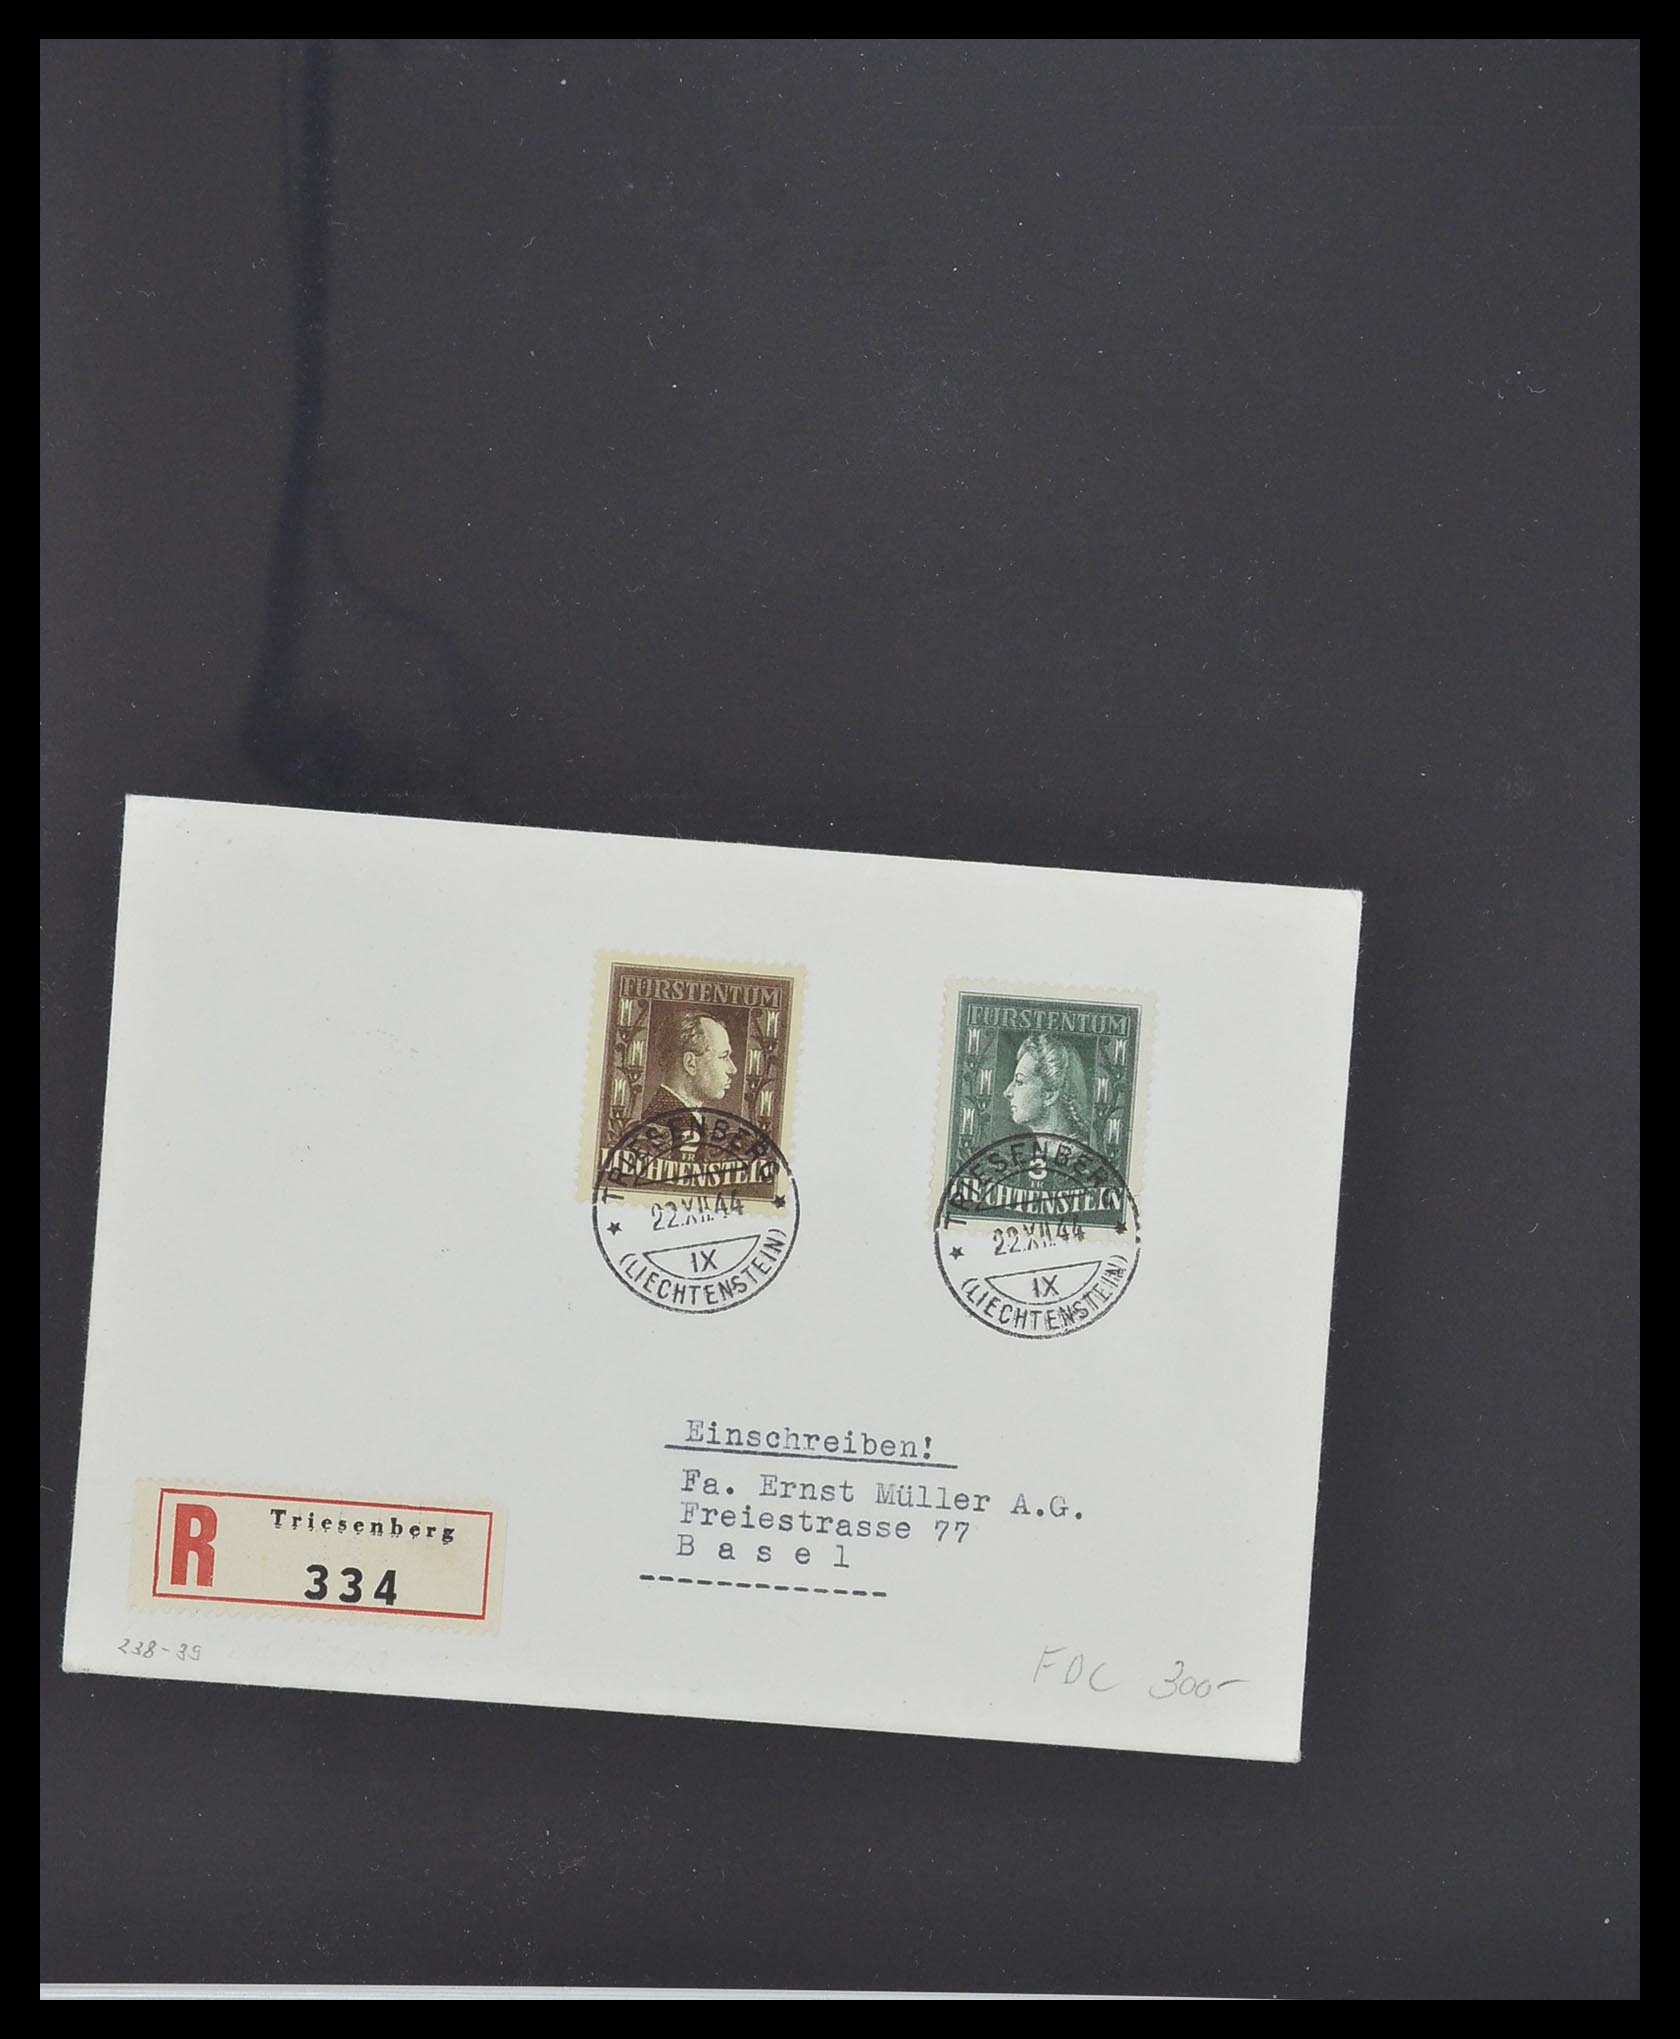 33493 032 - Stamp collection 33493 Liechtenstein 1912-2008.